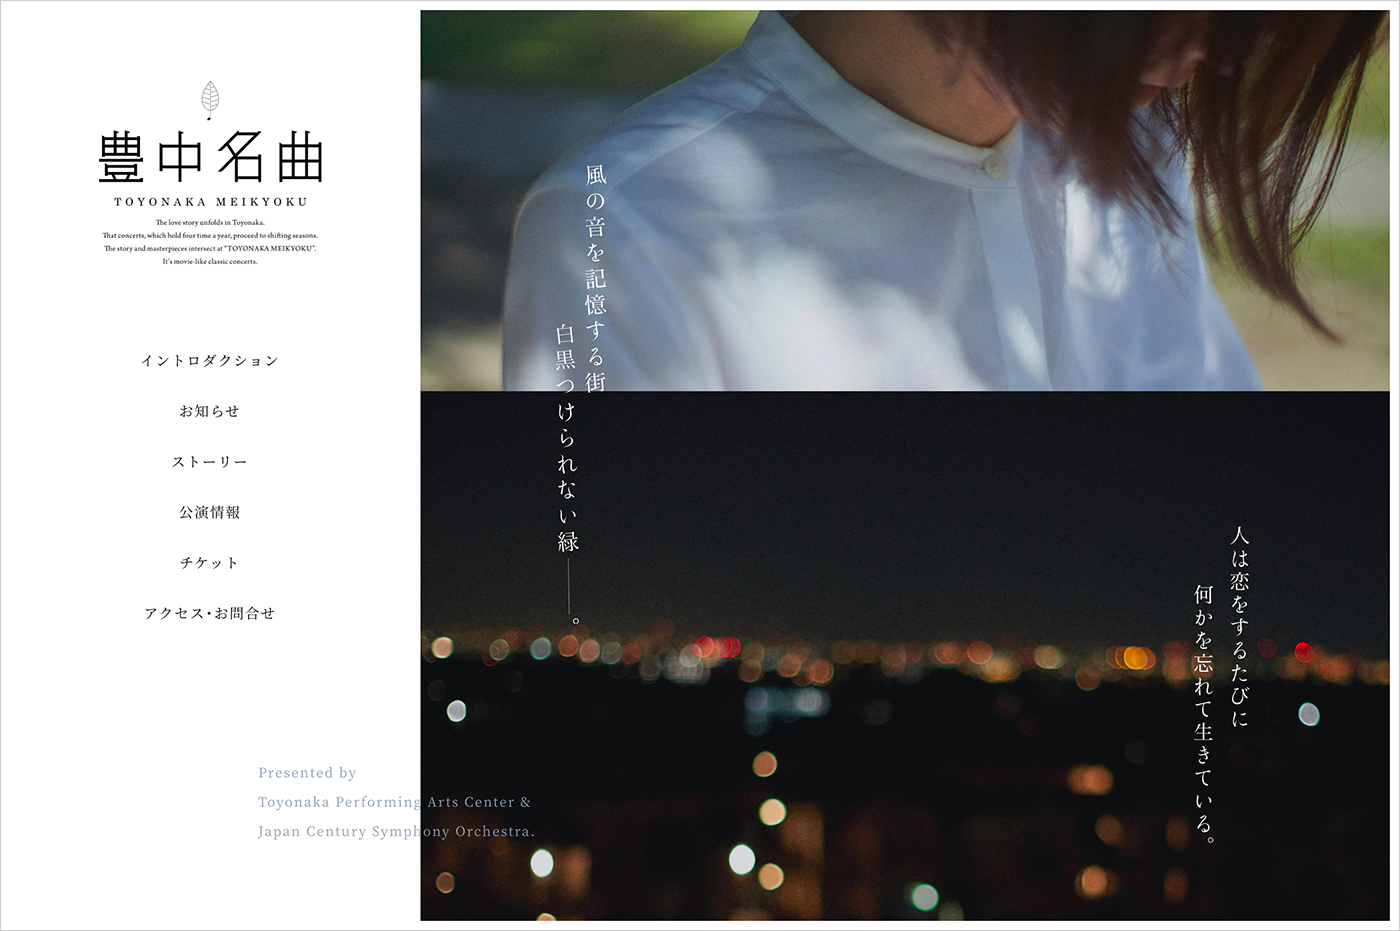 豊中名曲 TOYONAKA MEIKYOKUウェブサイトの画面キャプチャ画像